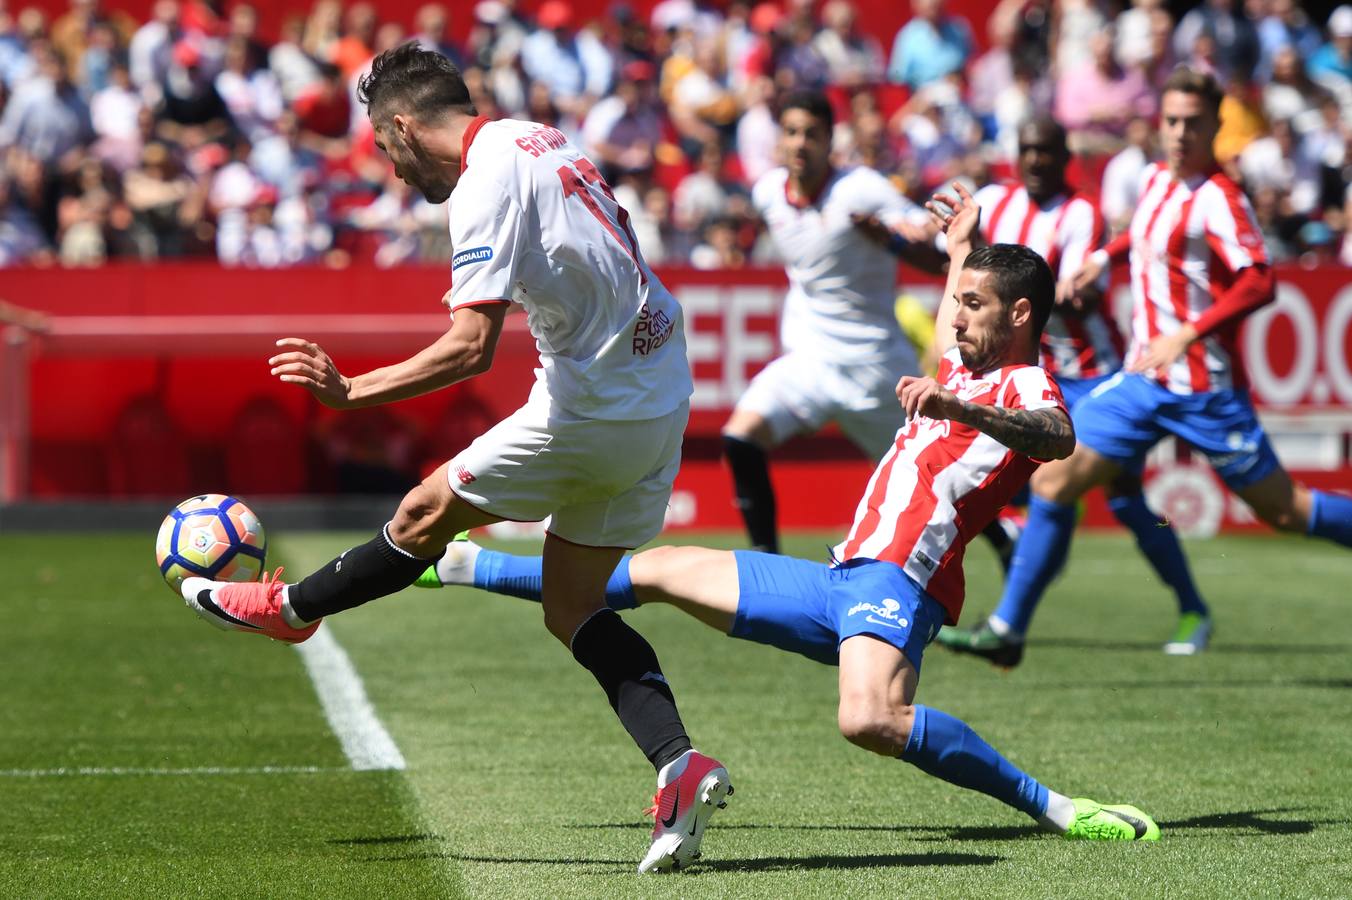 El Sevilla no logra pasar del empate contra el Sporting de Gijón